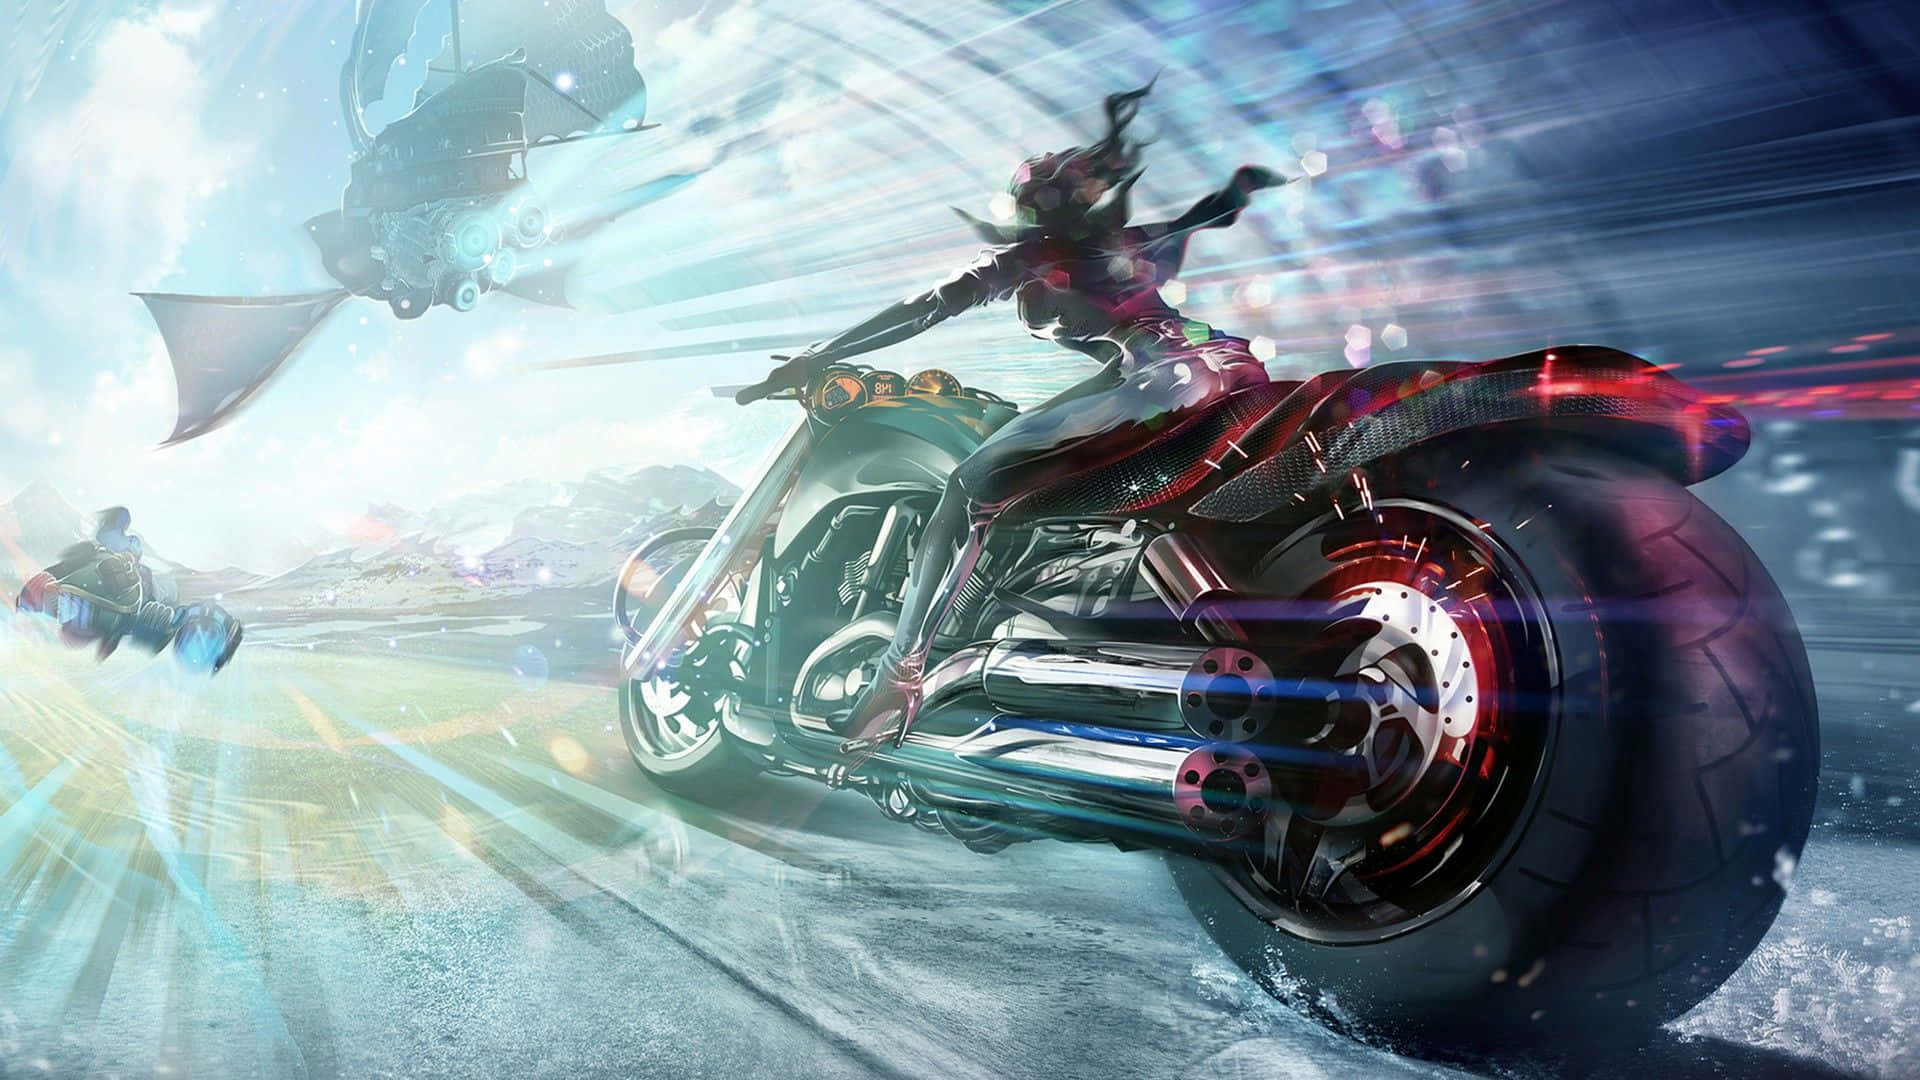 Fantasi Billede af Motorcykel Jagt